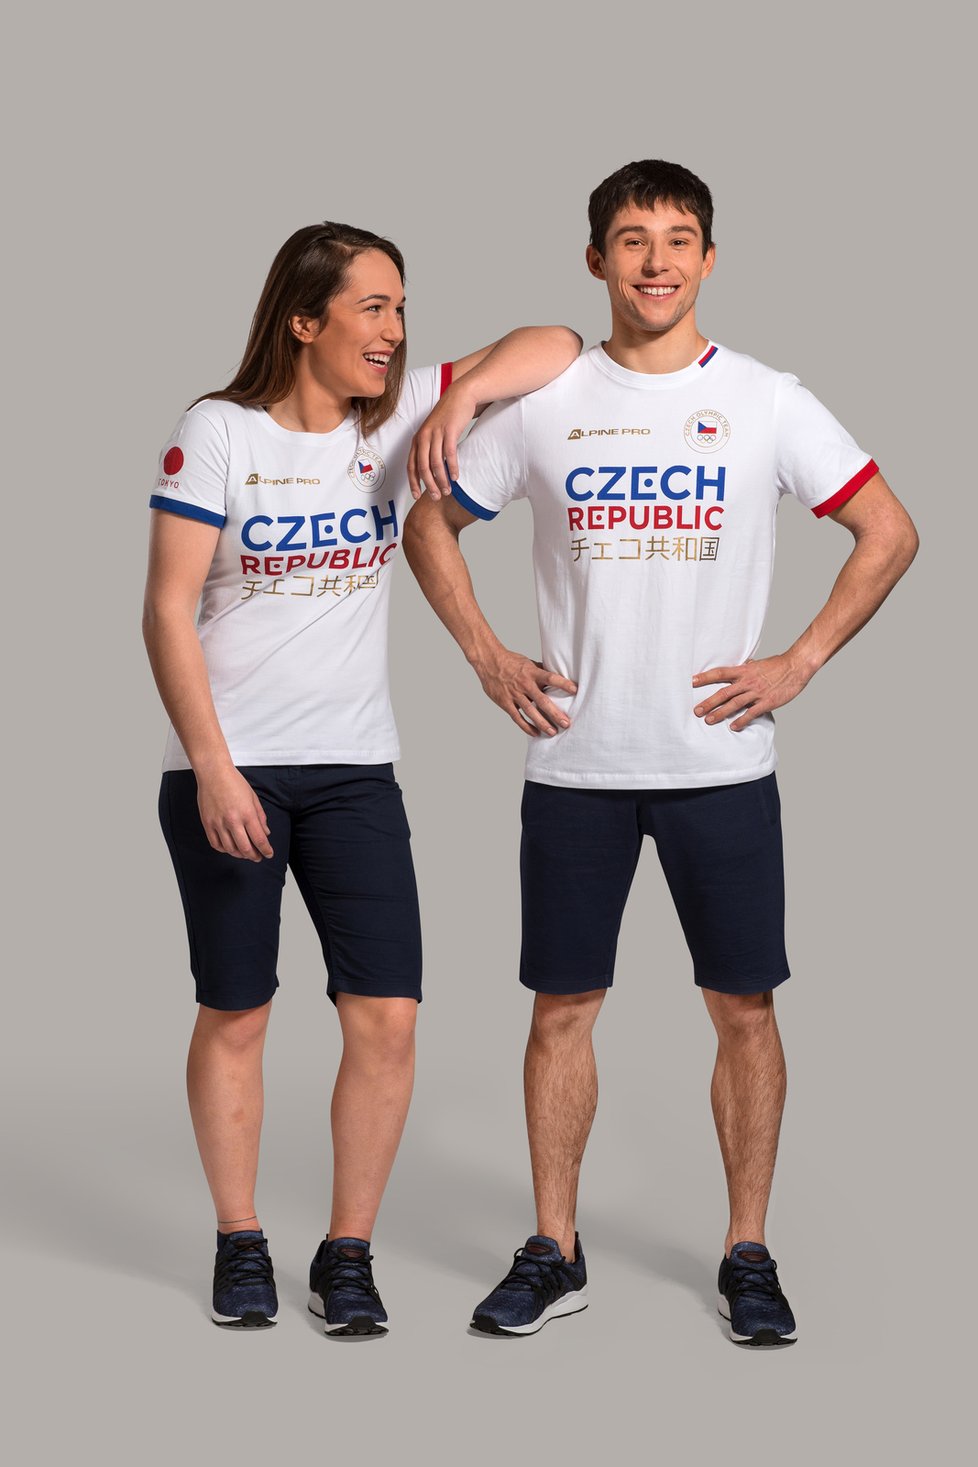 Vodní slalomáři Tereza Fišerová a Jiří Prskavec